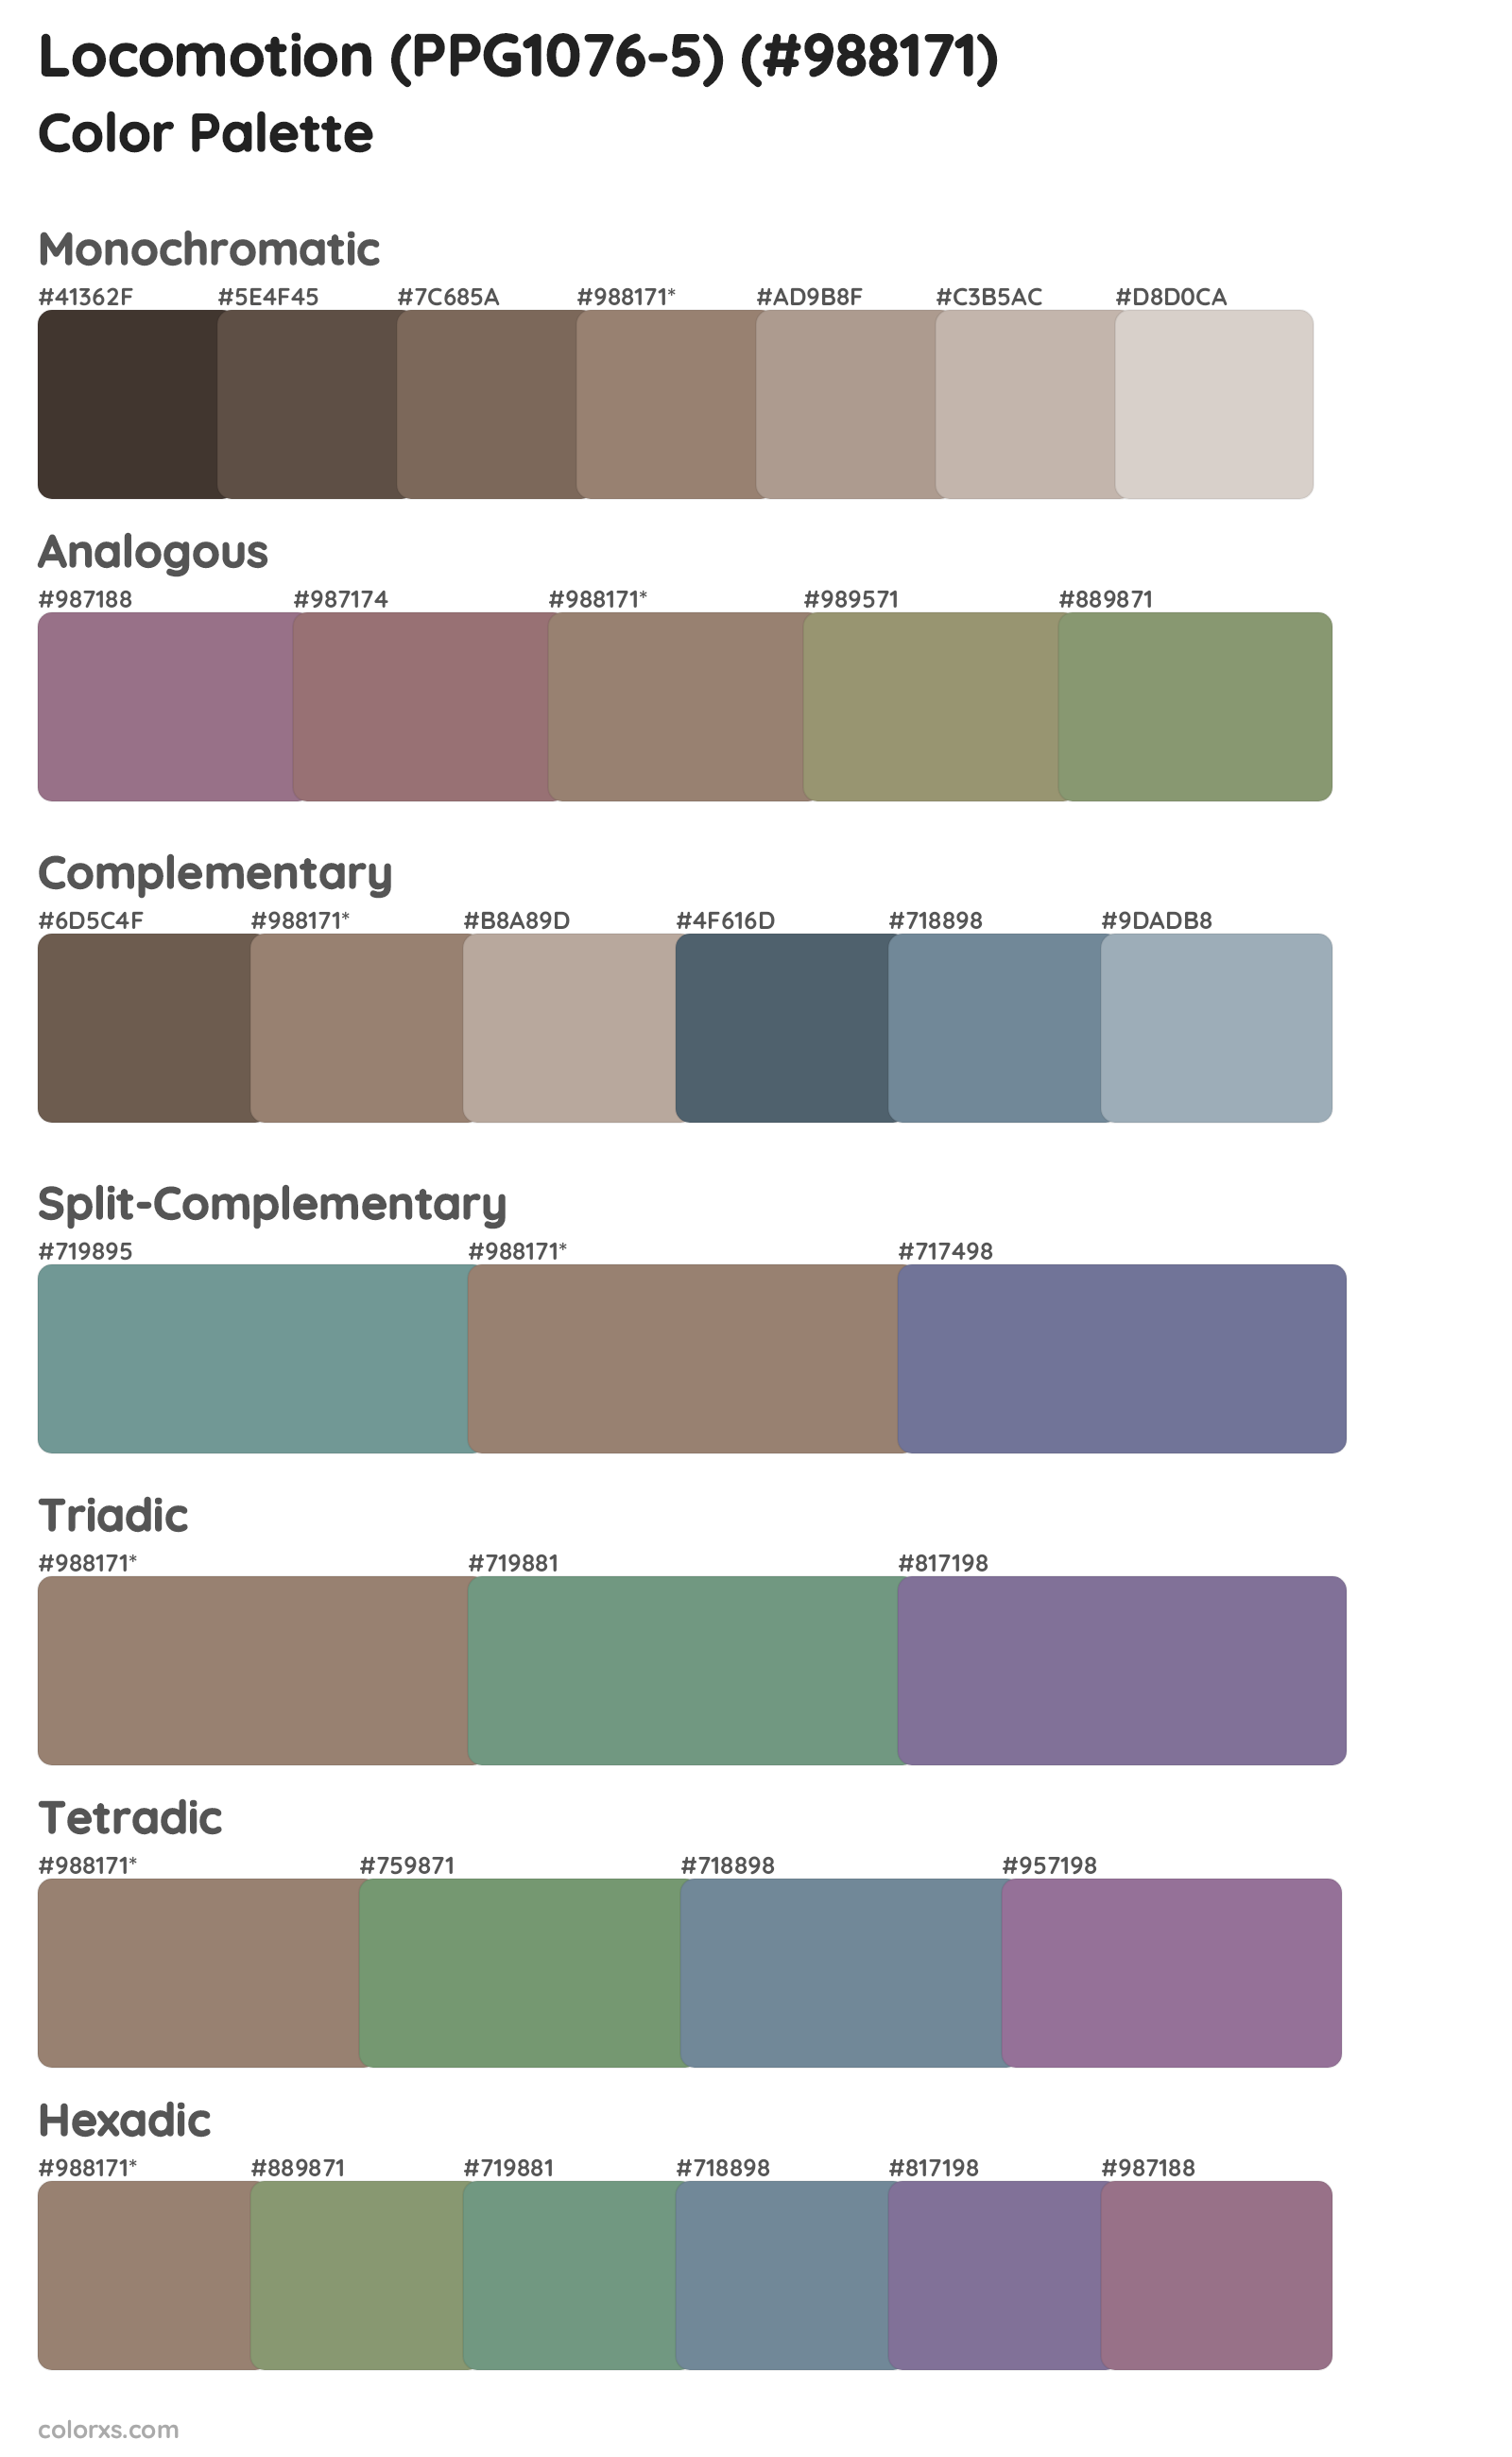 Locomotion (PPG1076-5) Color Scheme Palettes